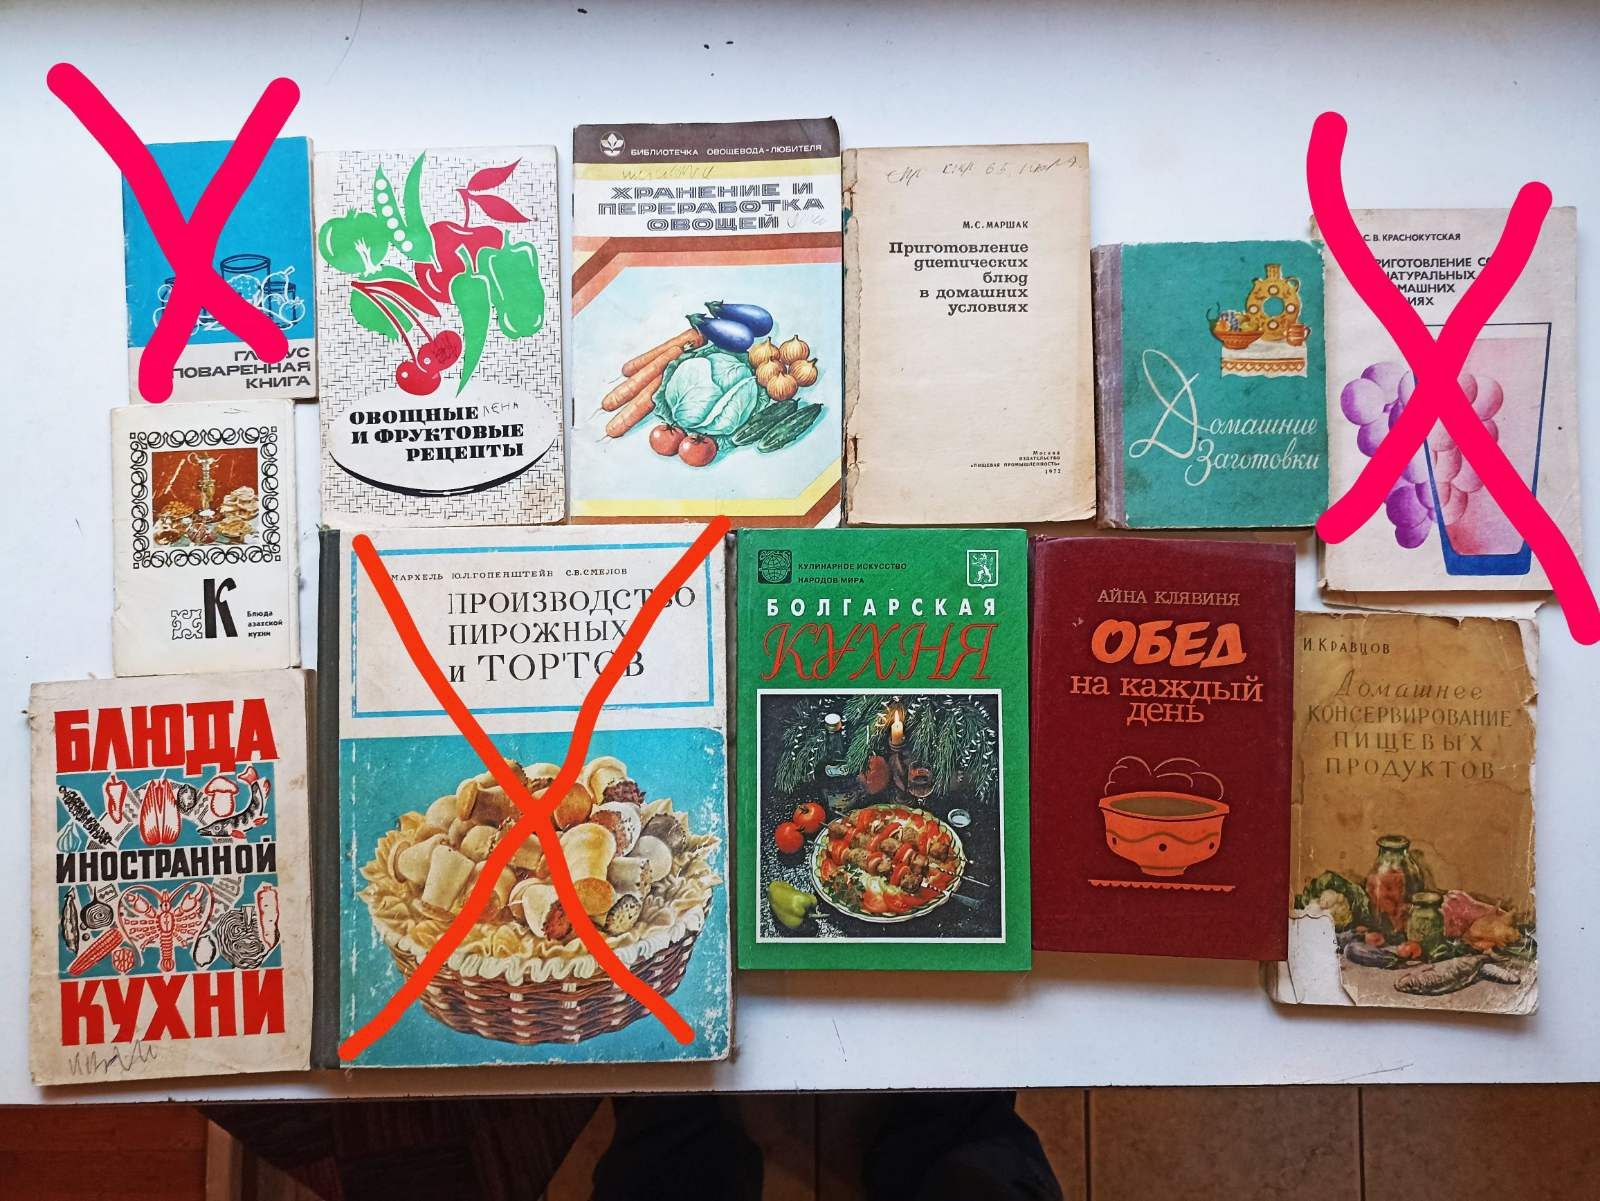 Книги по кулинарии, про рыб, художественные...